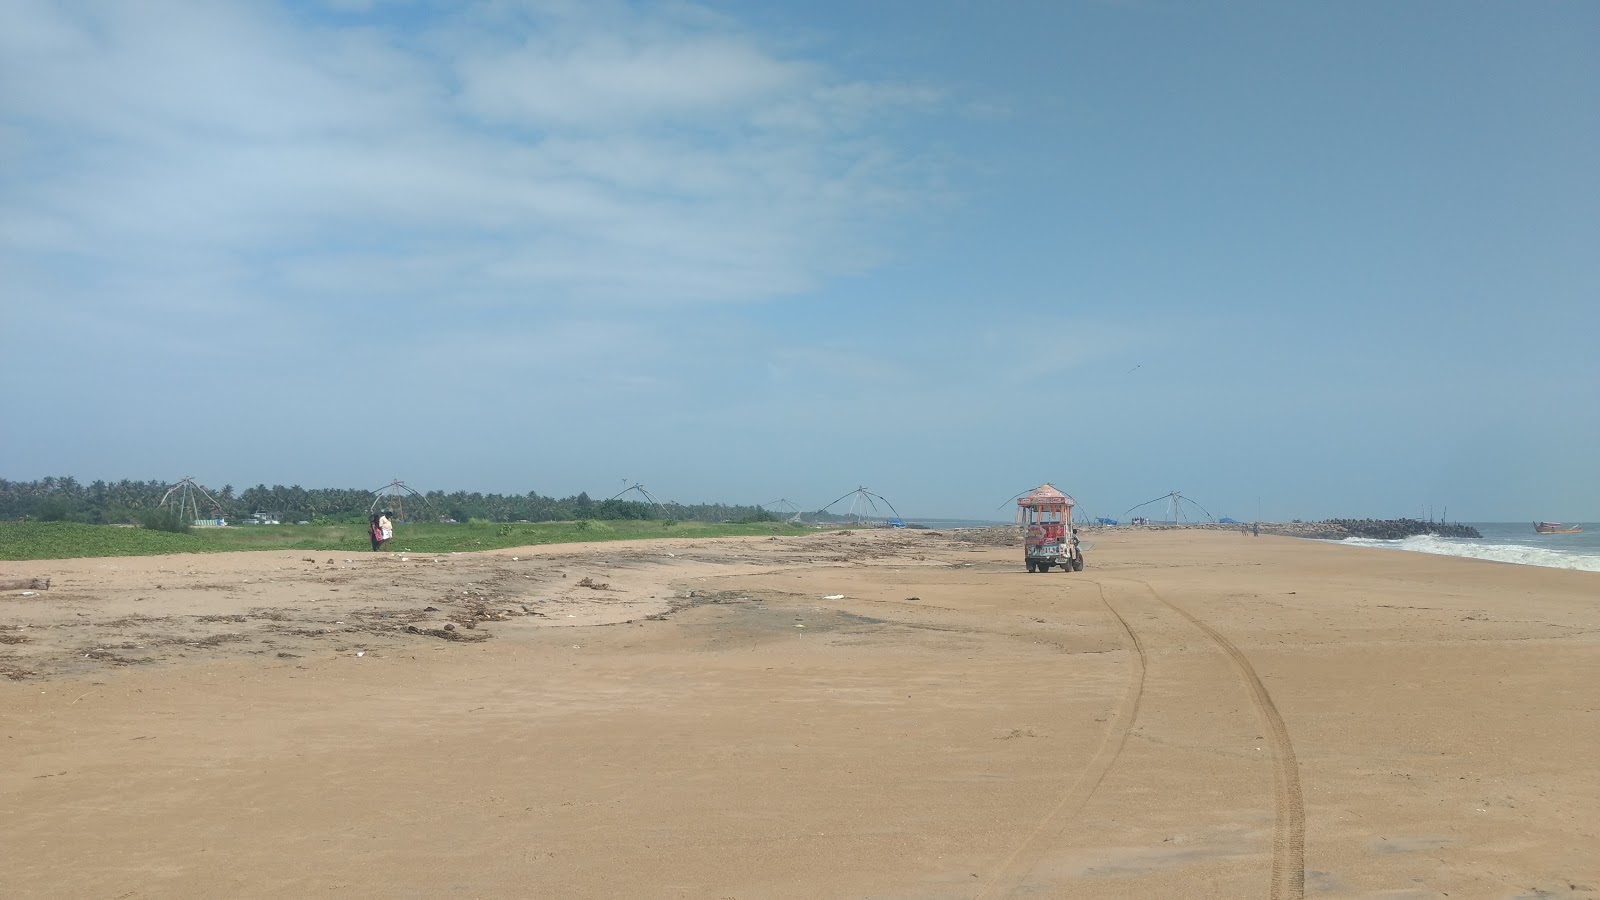 Munnakal Beach'in fotoğrafı geniş plaj ile birlikte